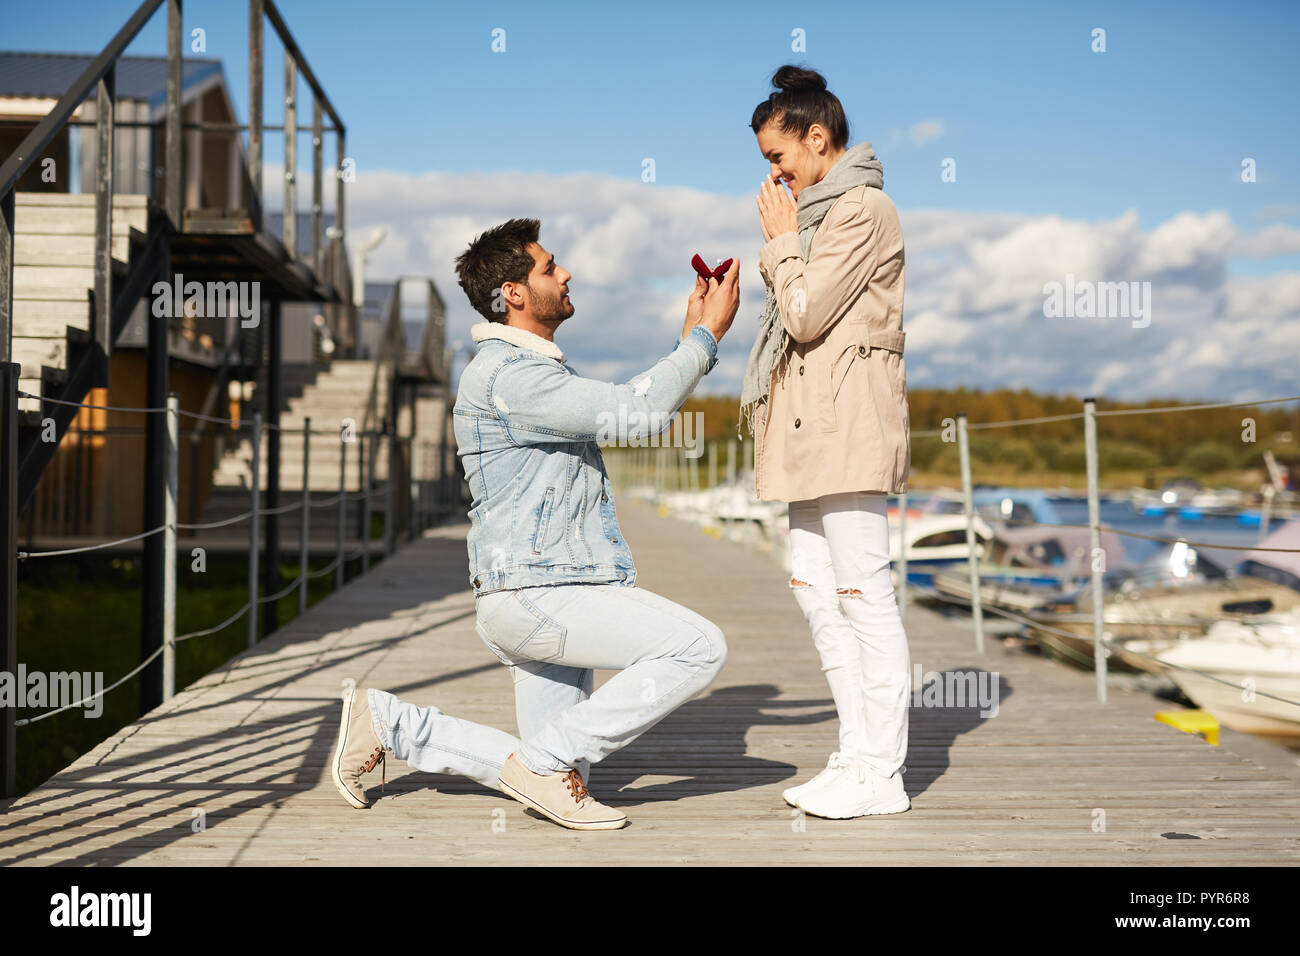 Homme amoureux propose d'petite amie sur pier Banque D'Images